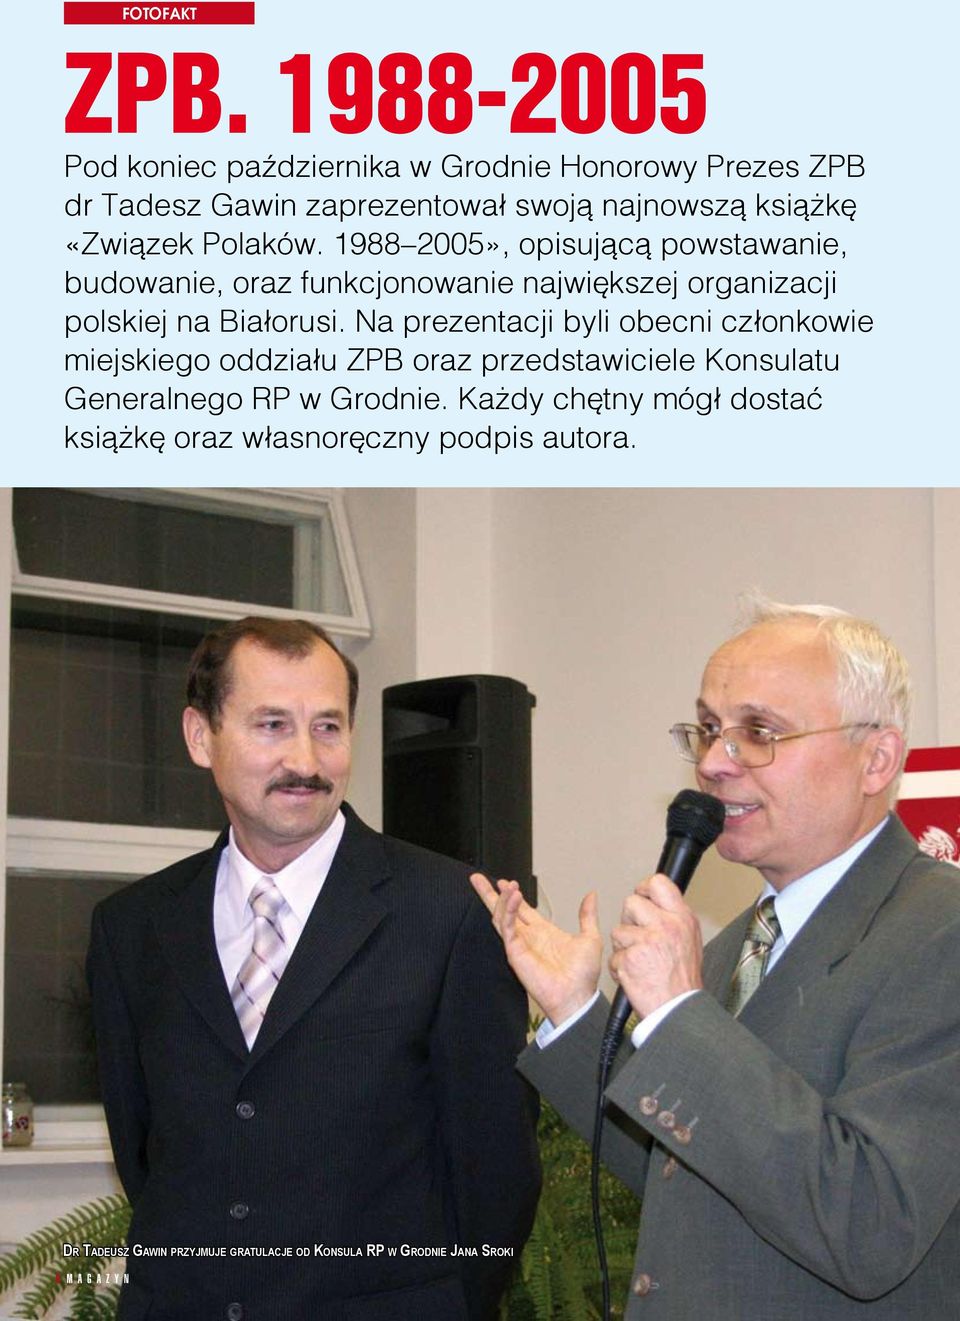 Polaków. 1988 2005», opisującą powstawanie, budowanie, oraz funkcjonowanie największej organizacji polskiej na Białorusi.